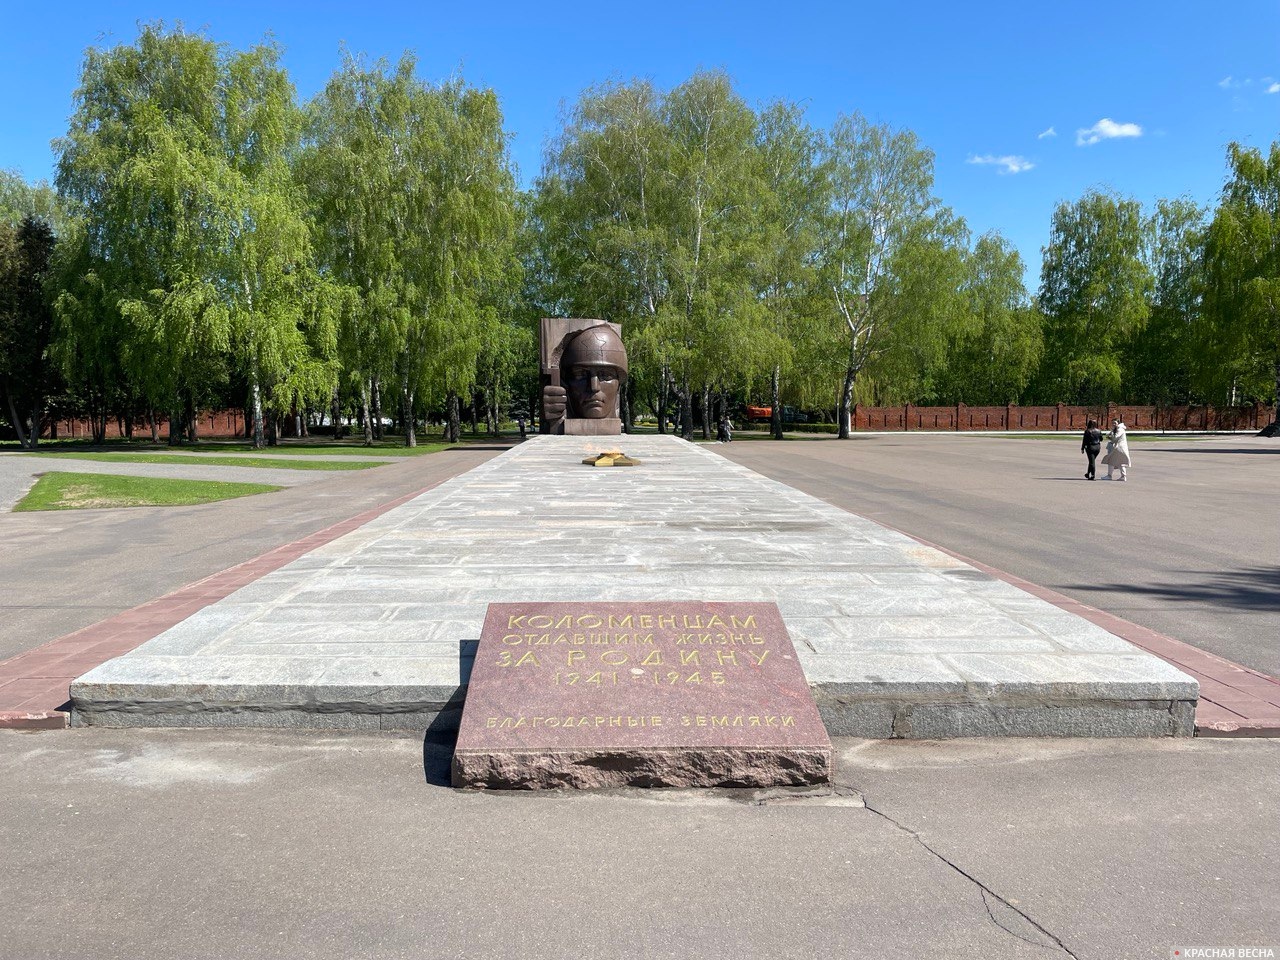  Мемориал «От коломенцев землякам, павшим в Великую Отечественную войну 1941 - 1945 гг.»